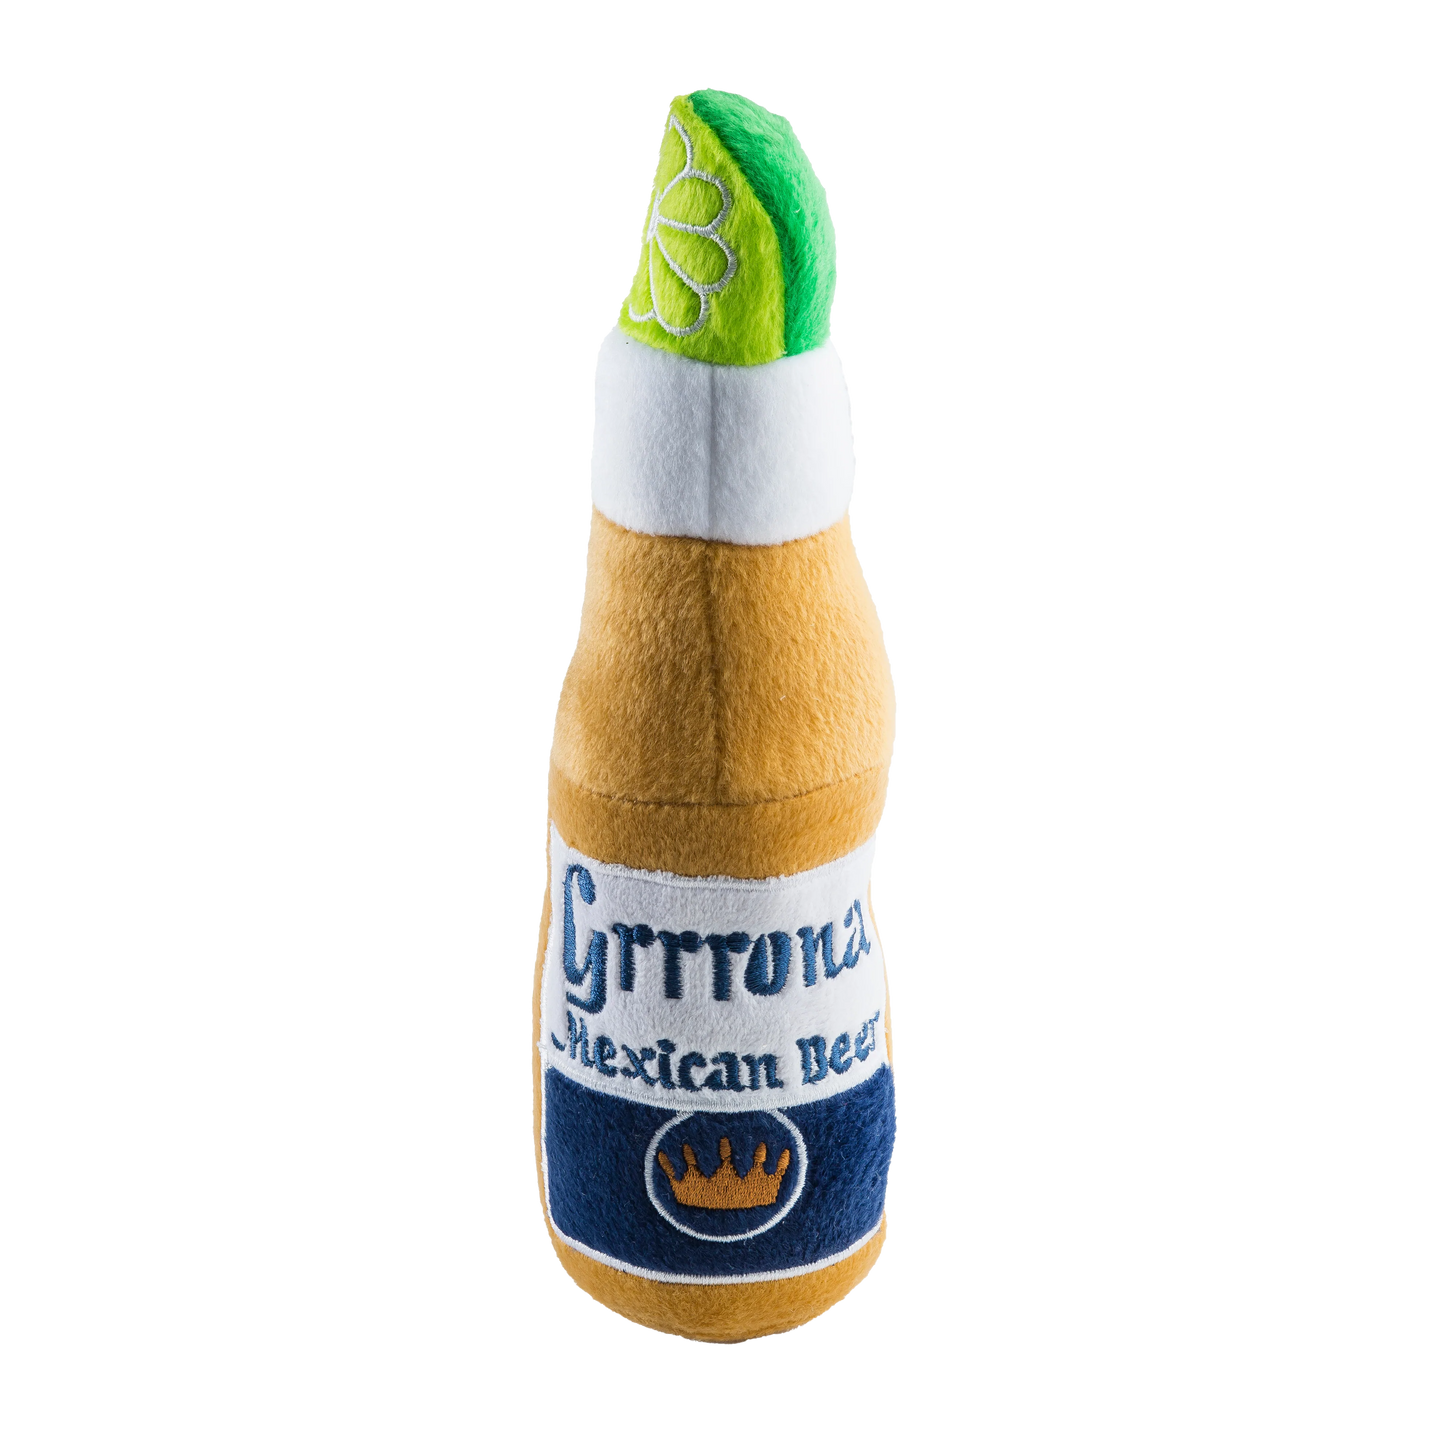 Grrrona Beer Bottle Dog Toy - Large